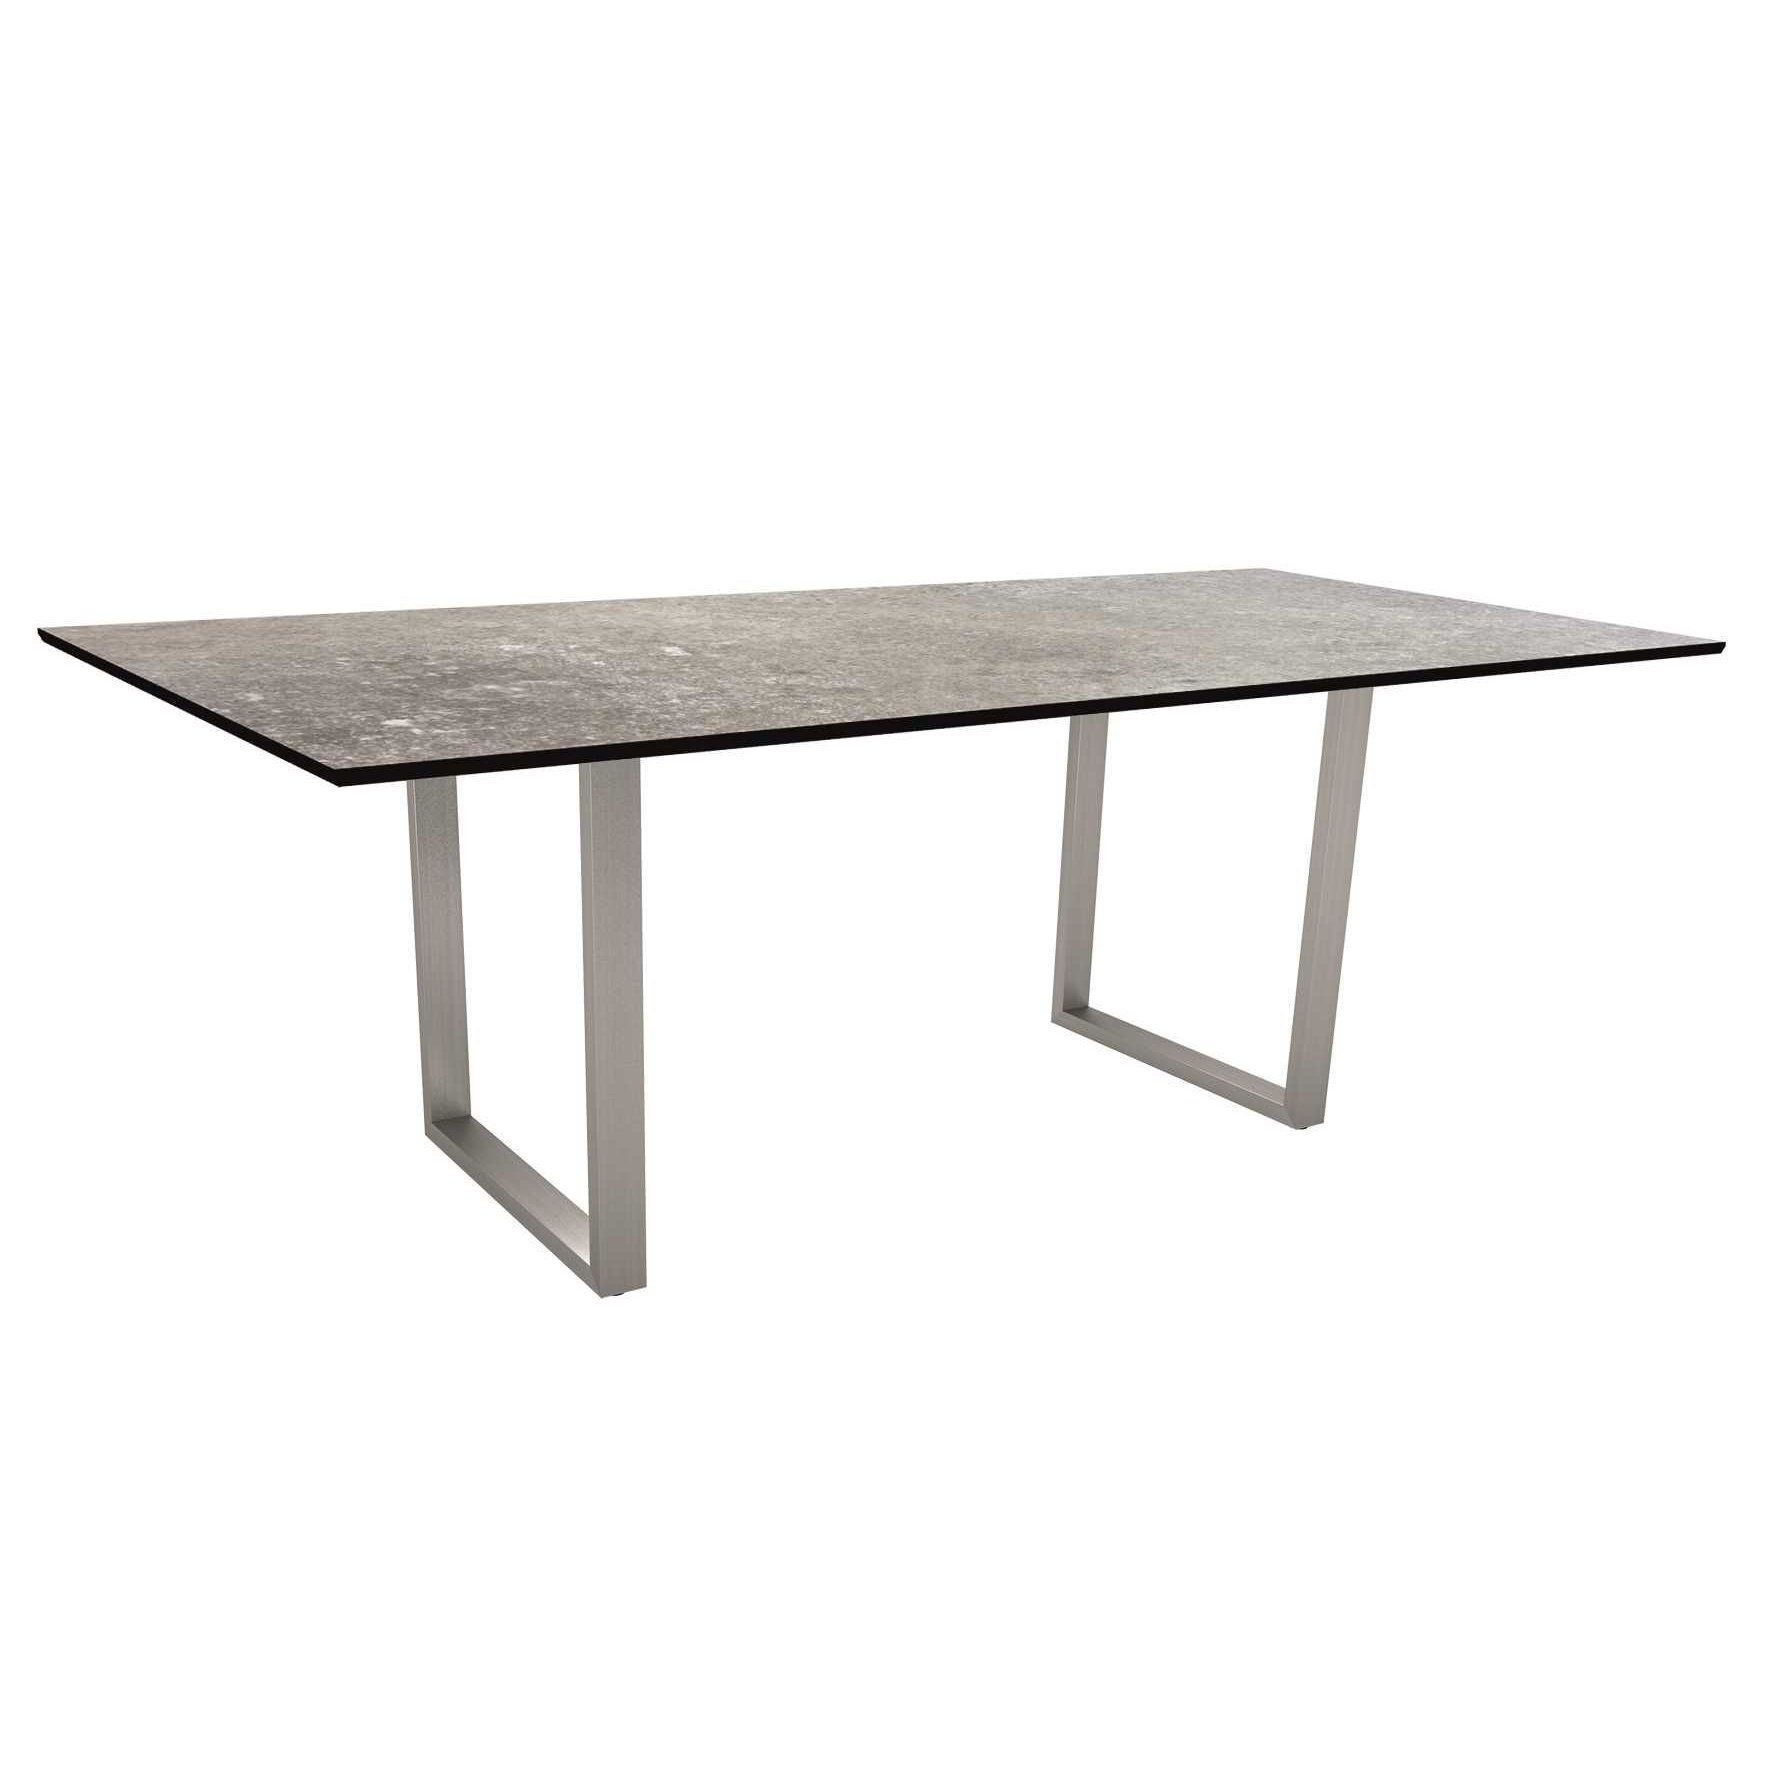 Stern Kufentisch, Gestell Edelstahl, Tischplatte HPL Vintage stone, Tischgröße: 200x100 cm